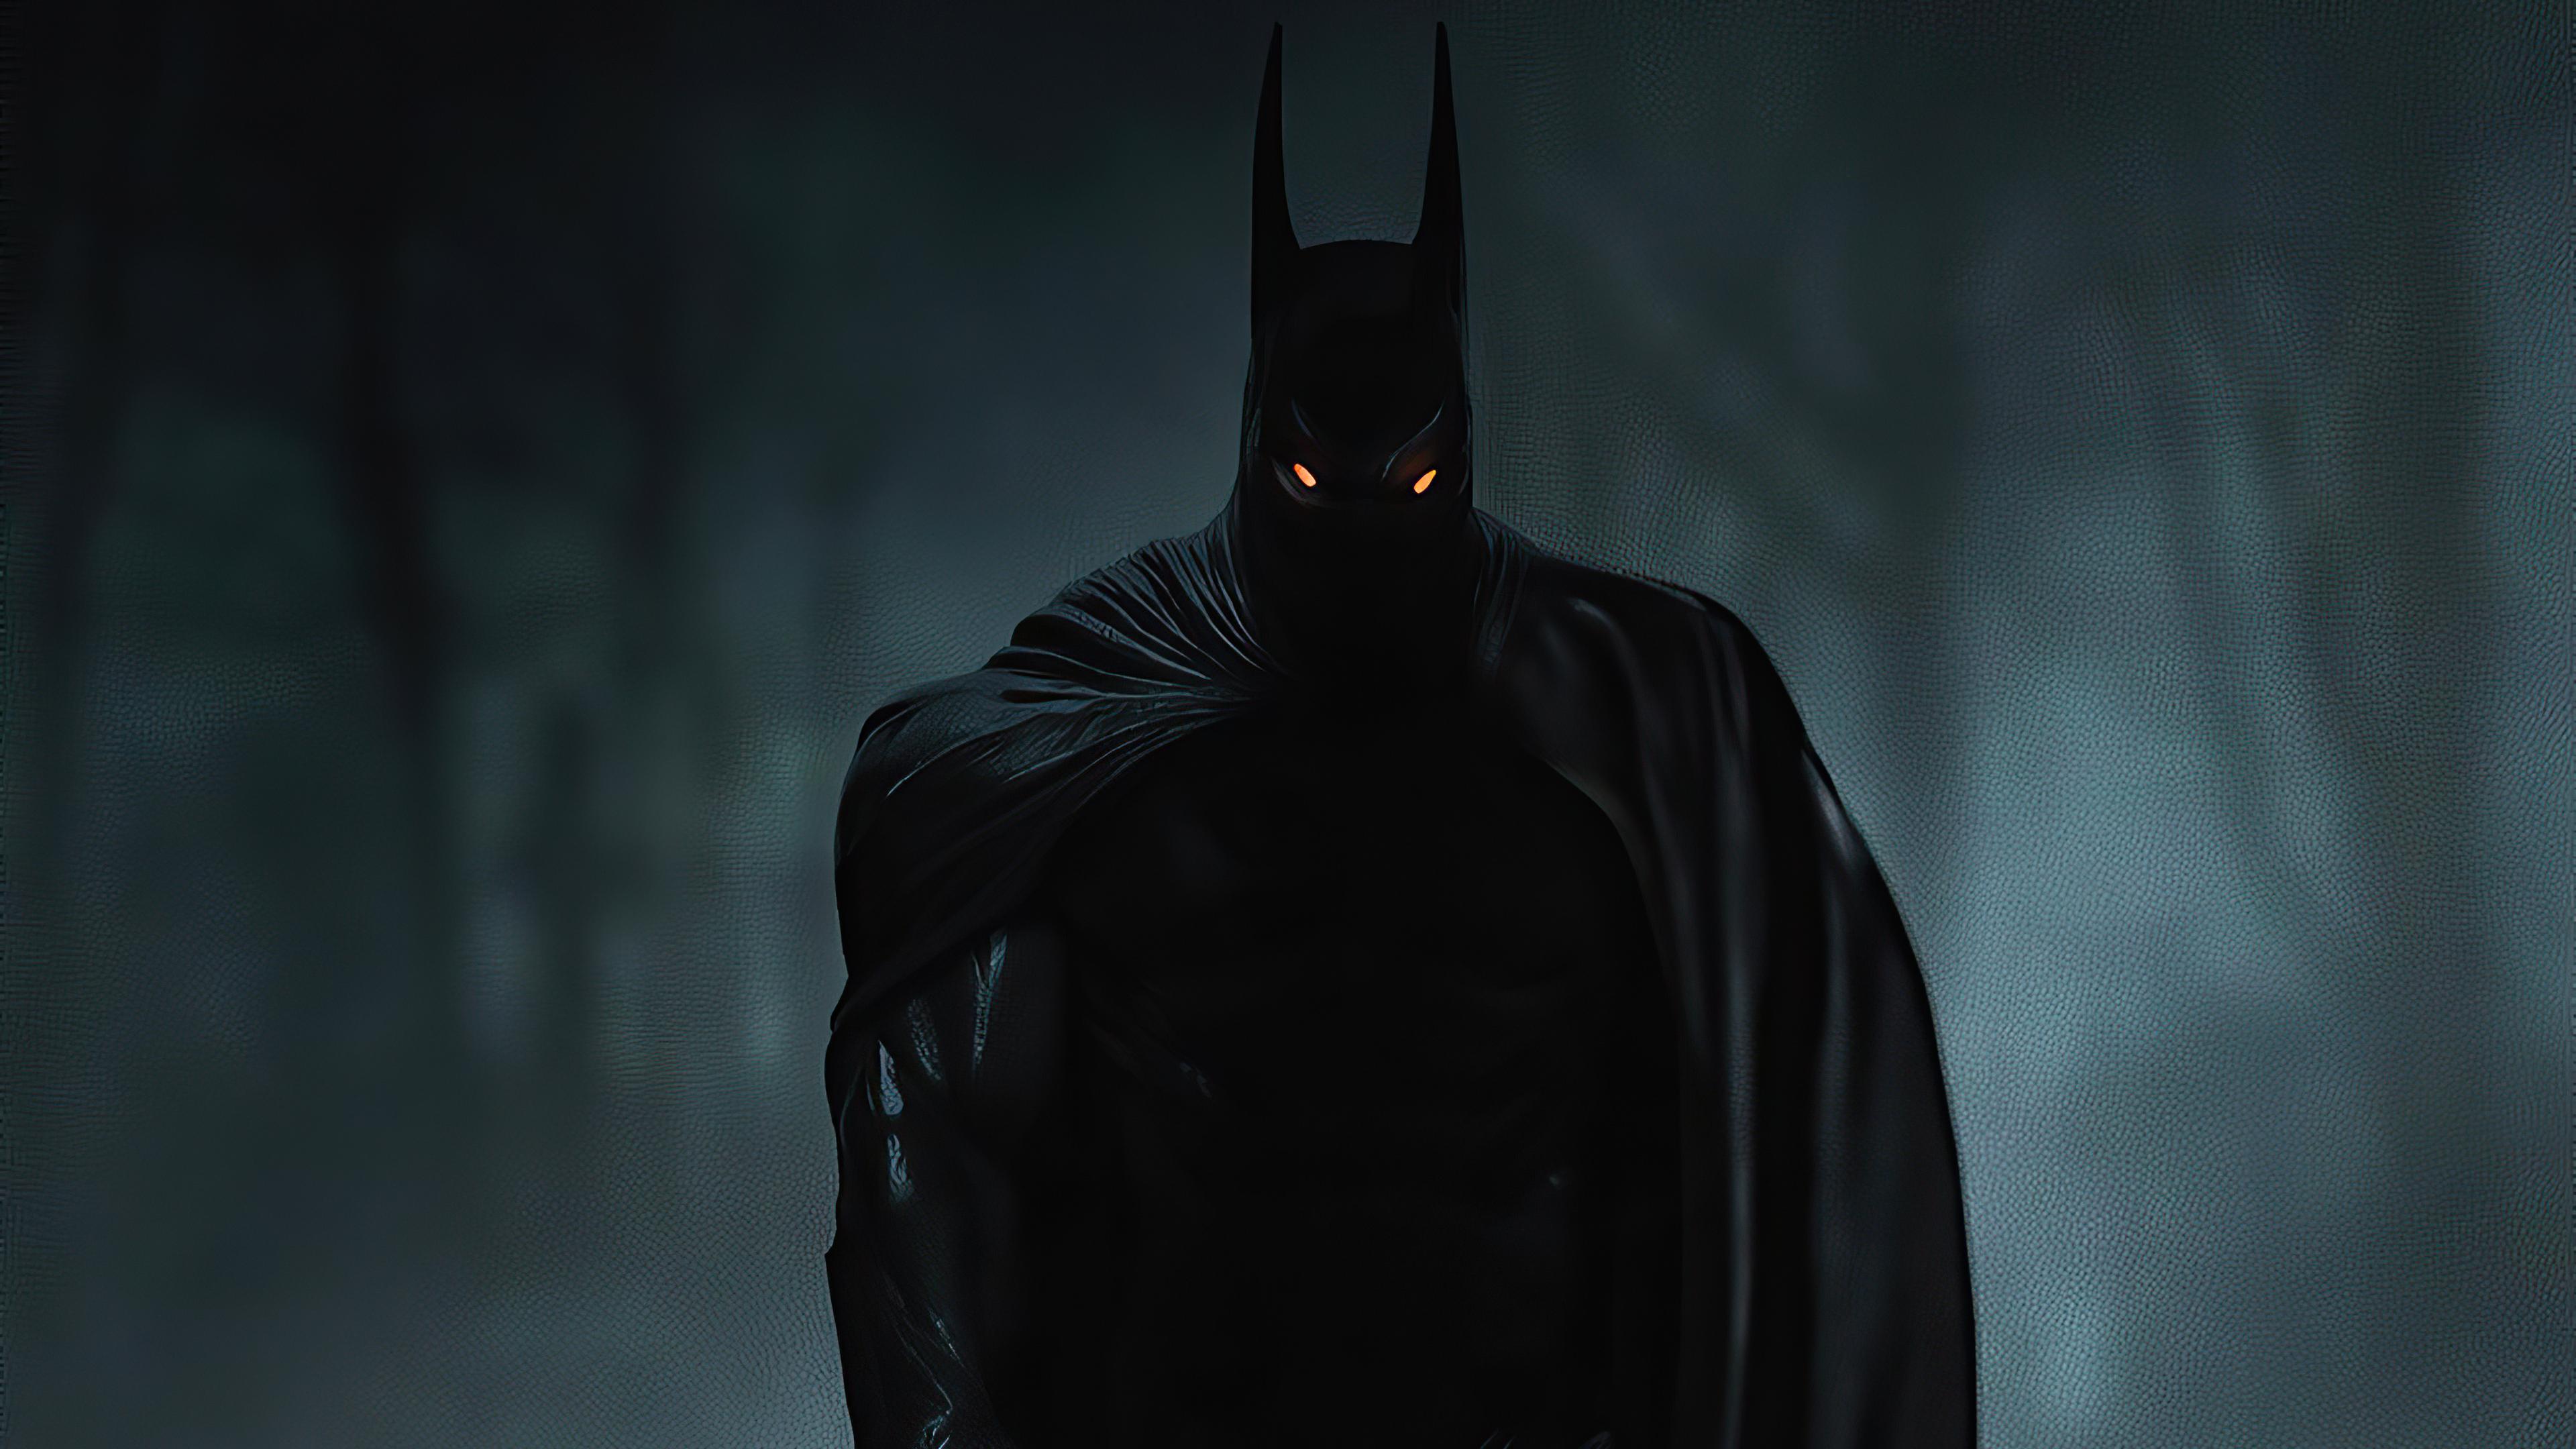 3840 x 2160 · jpeg - Batman In Dark 4k 2020, HD Superheroes, 4k Wallpapers, Images ...